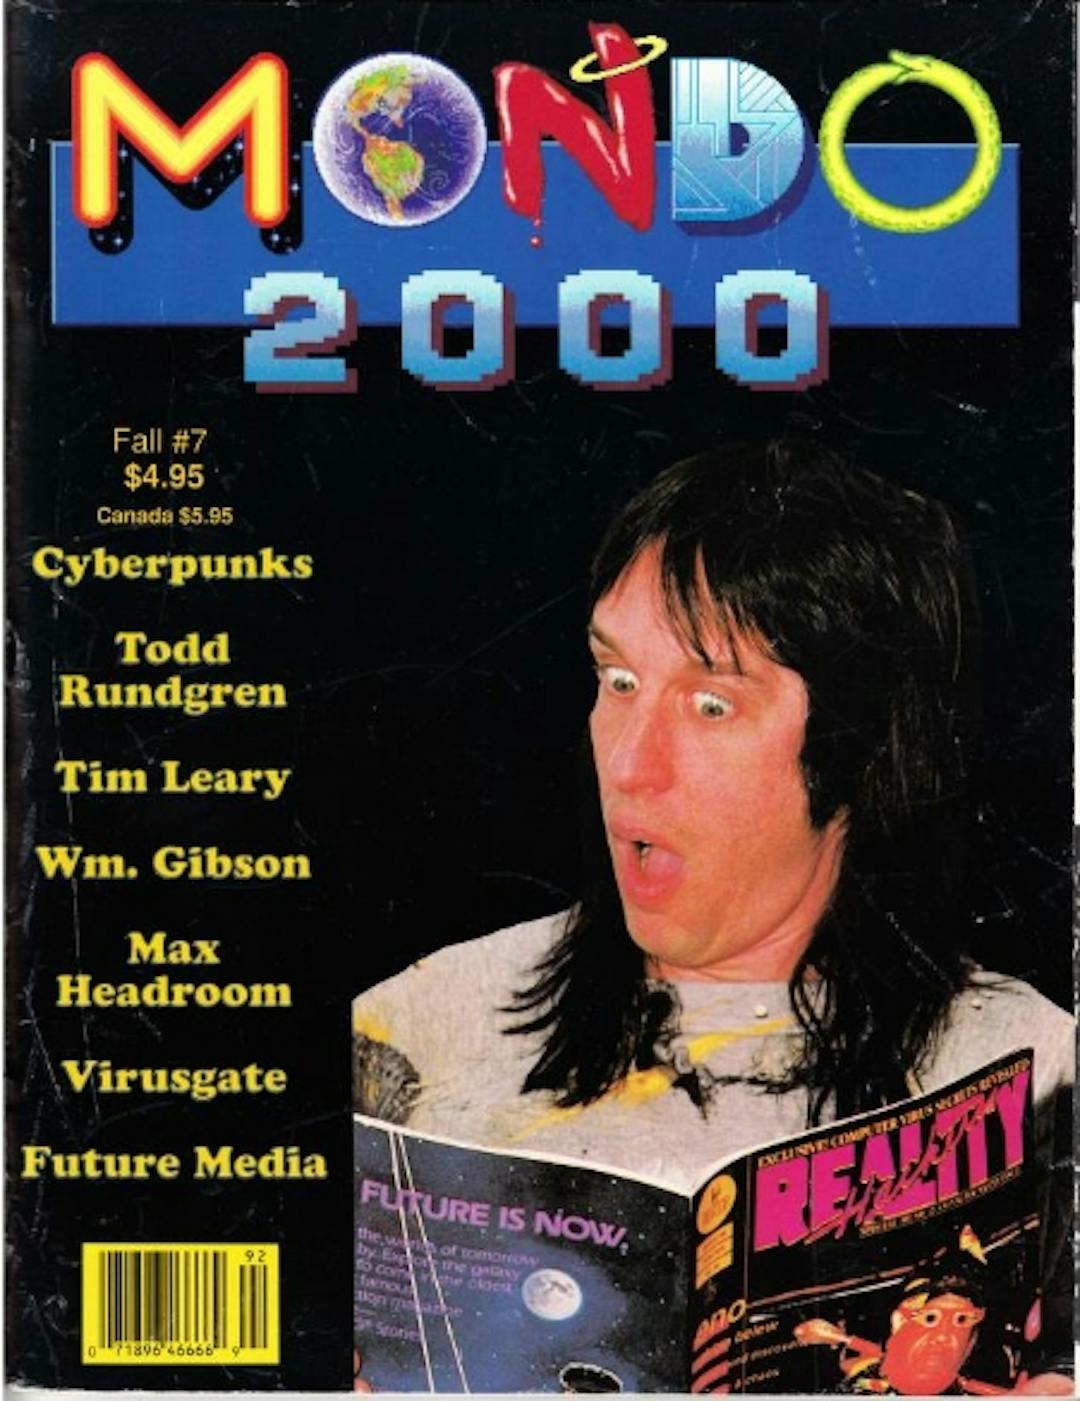 Mondo 2000 第 1 期可在互联网档案馆中找到